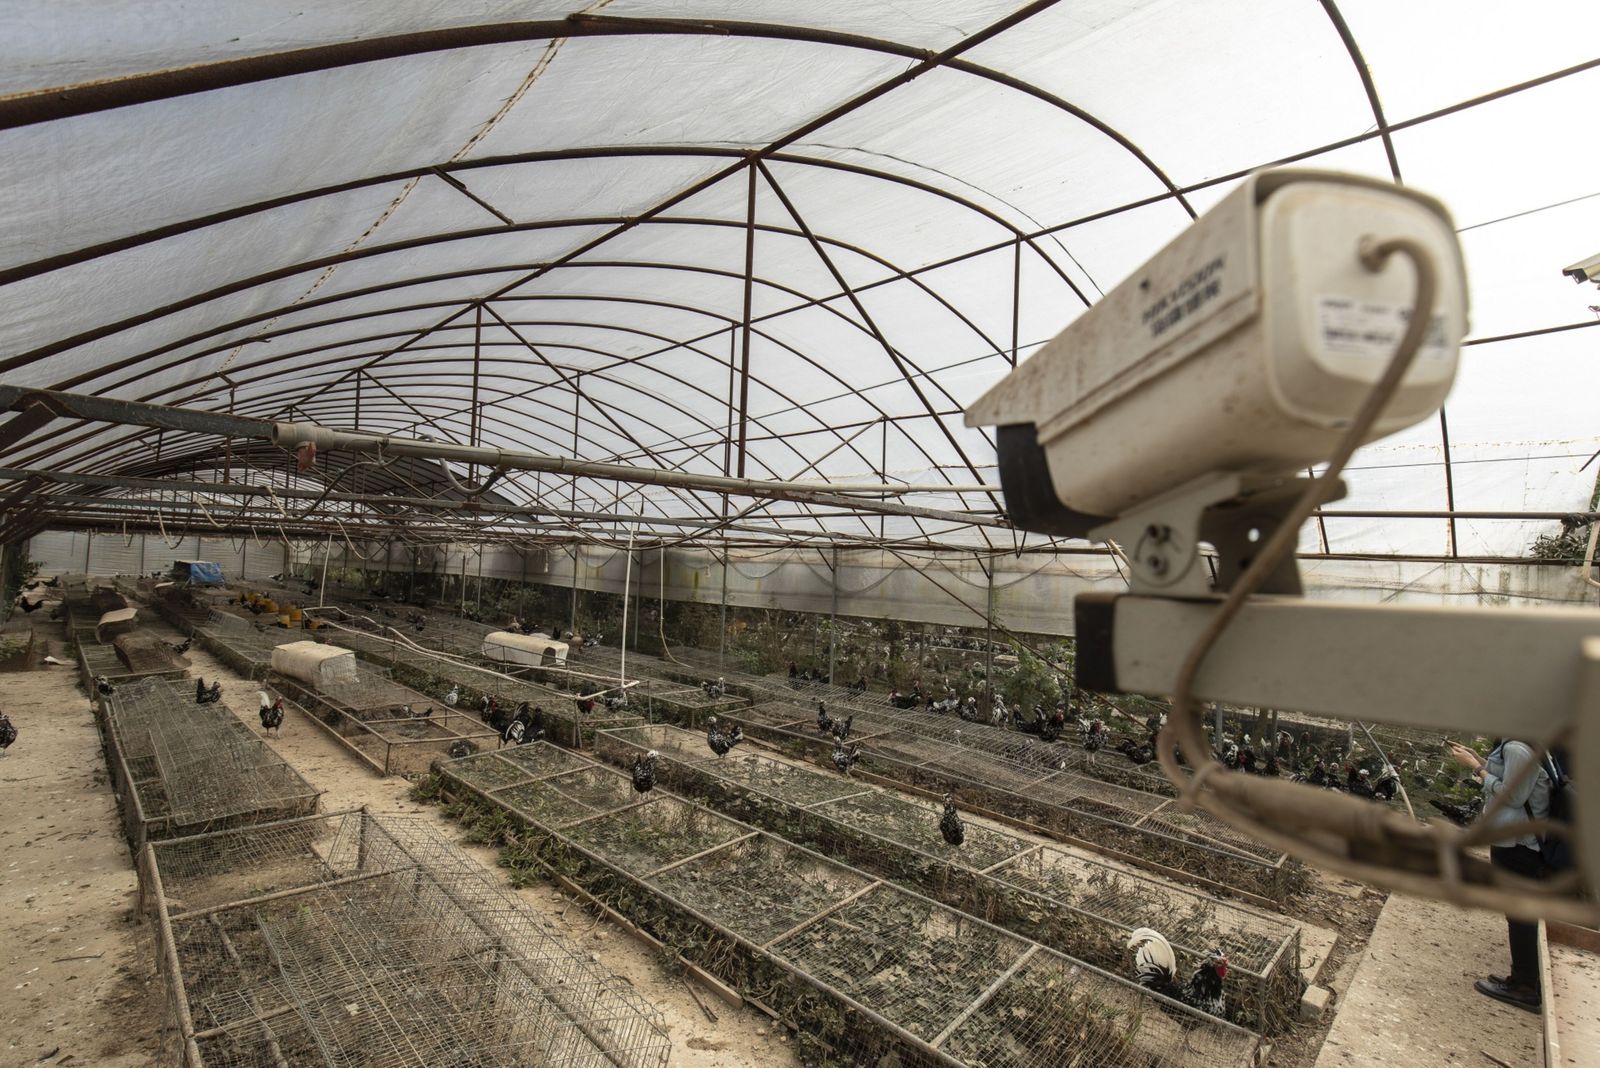 كاميرا لمراقبة الدجاج في مزرعة بمقاطعة فوجيان الصينية - 18 نوفمبر 2020 - Bloomberg